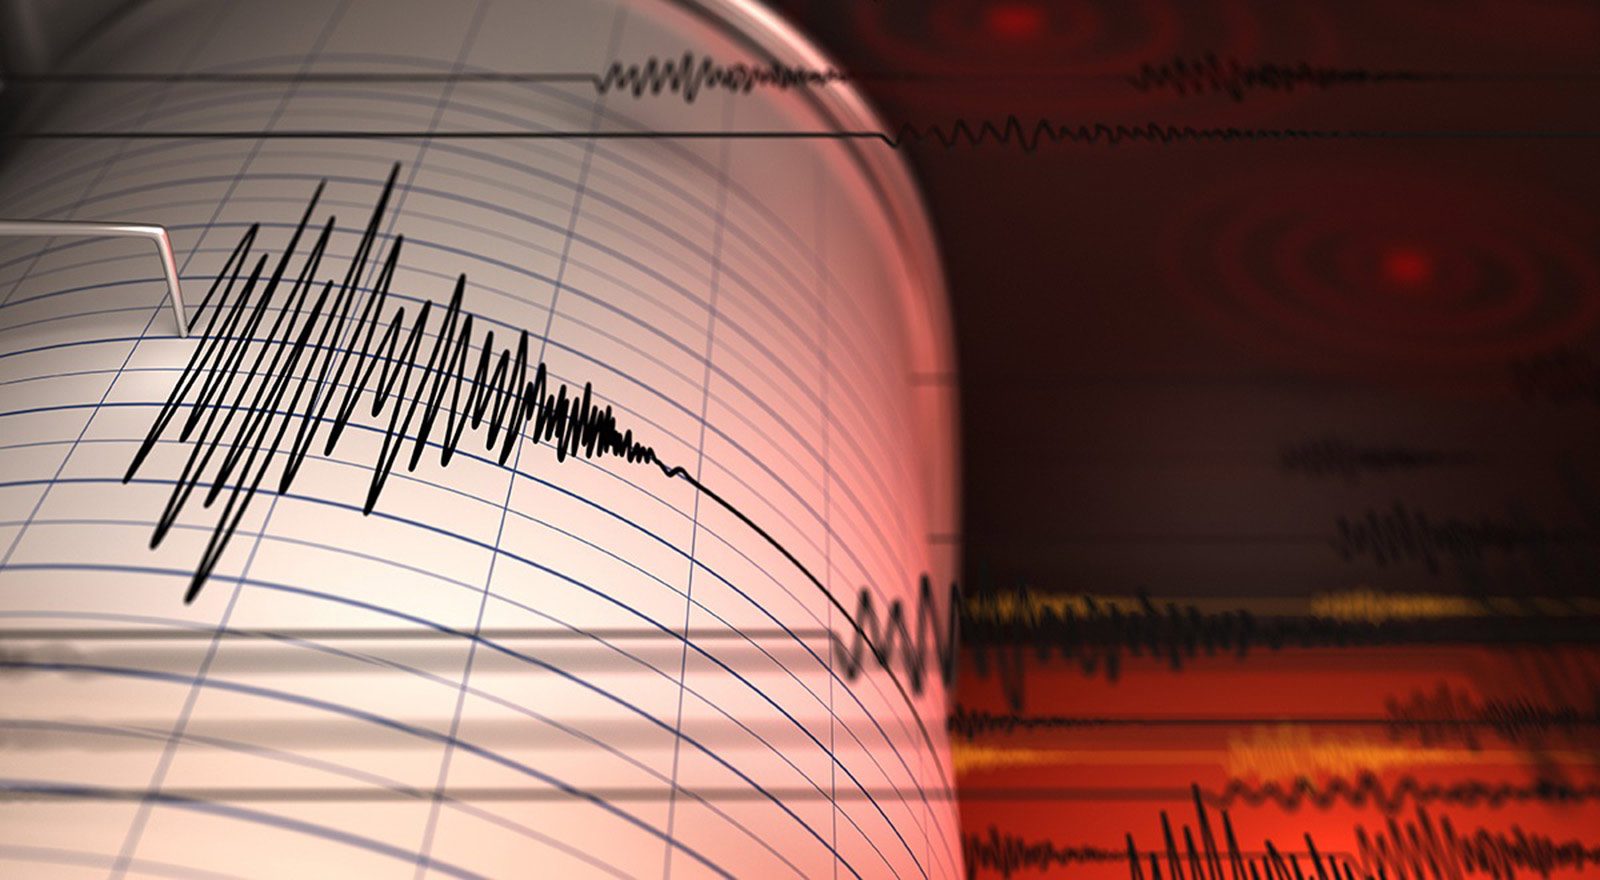 زلزال بقوة 5.2 درجات يضرب سواحل جزر فيجي